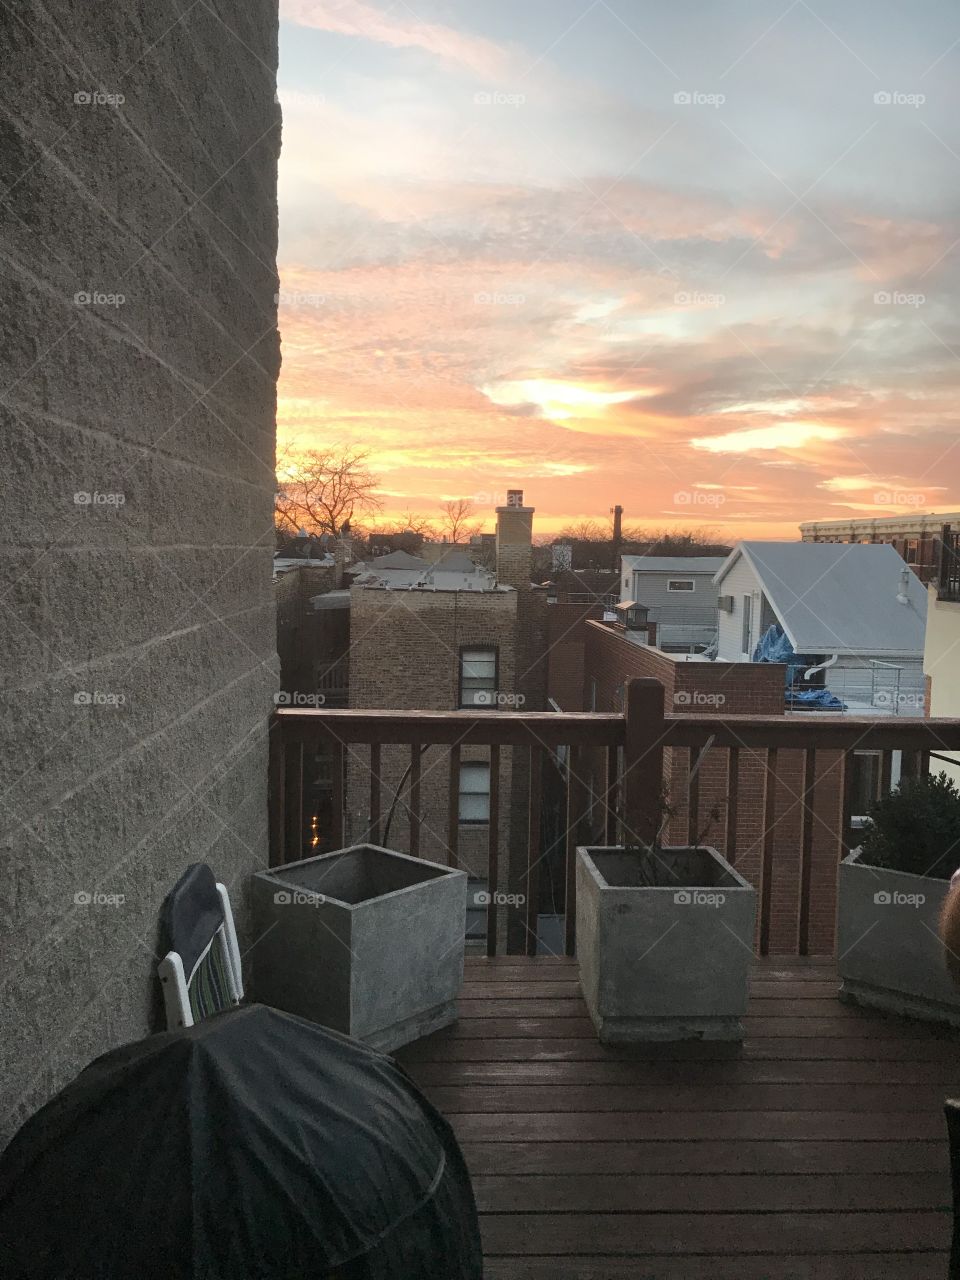 A beautiful sunset